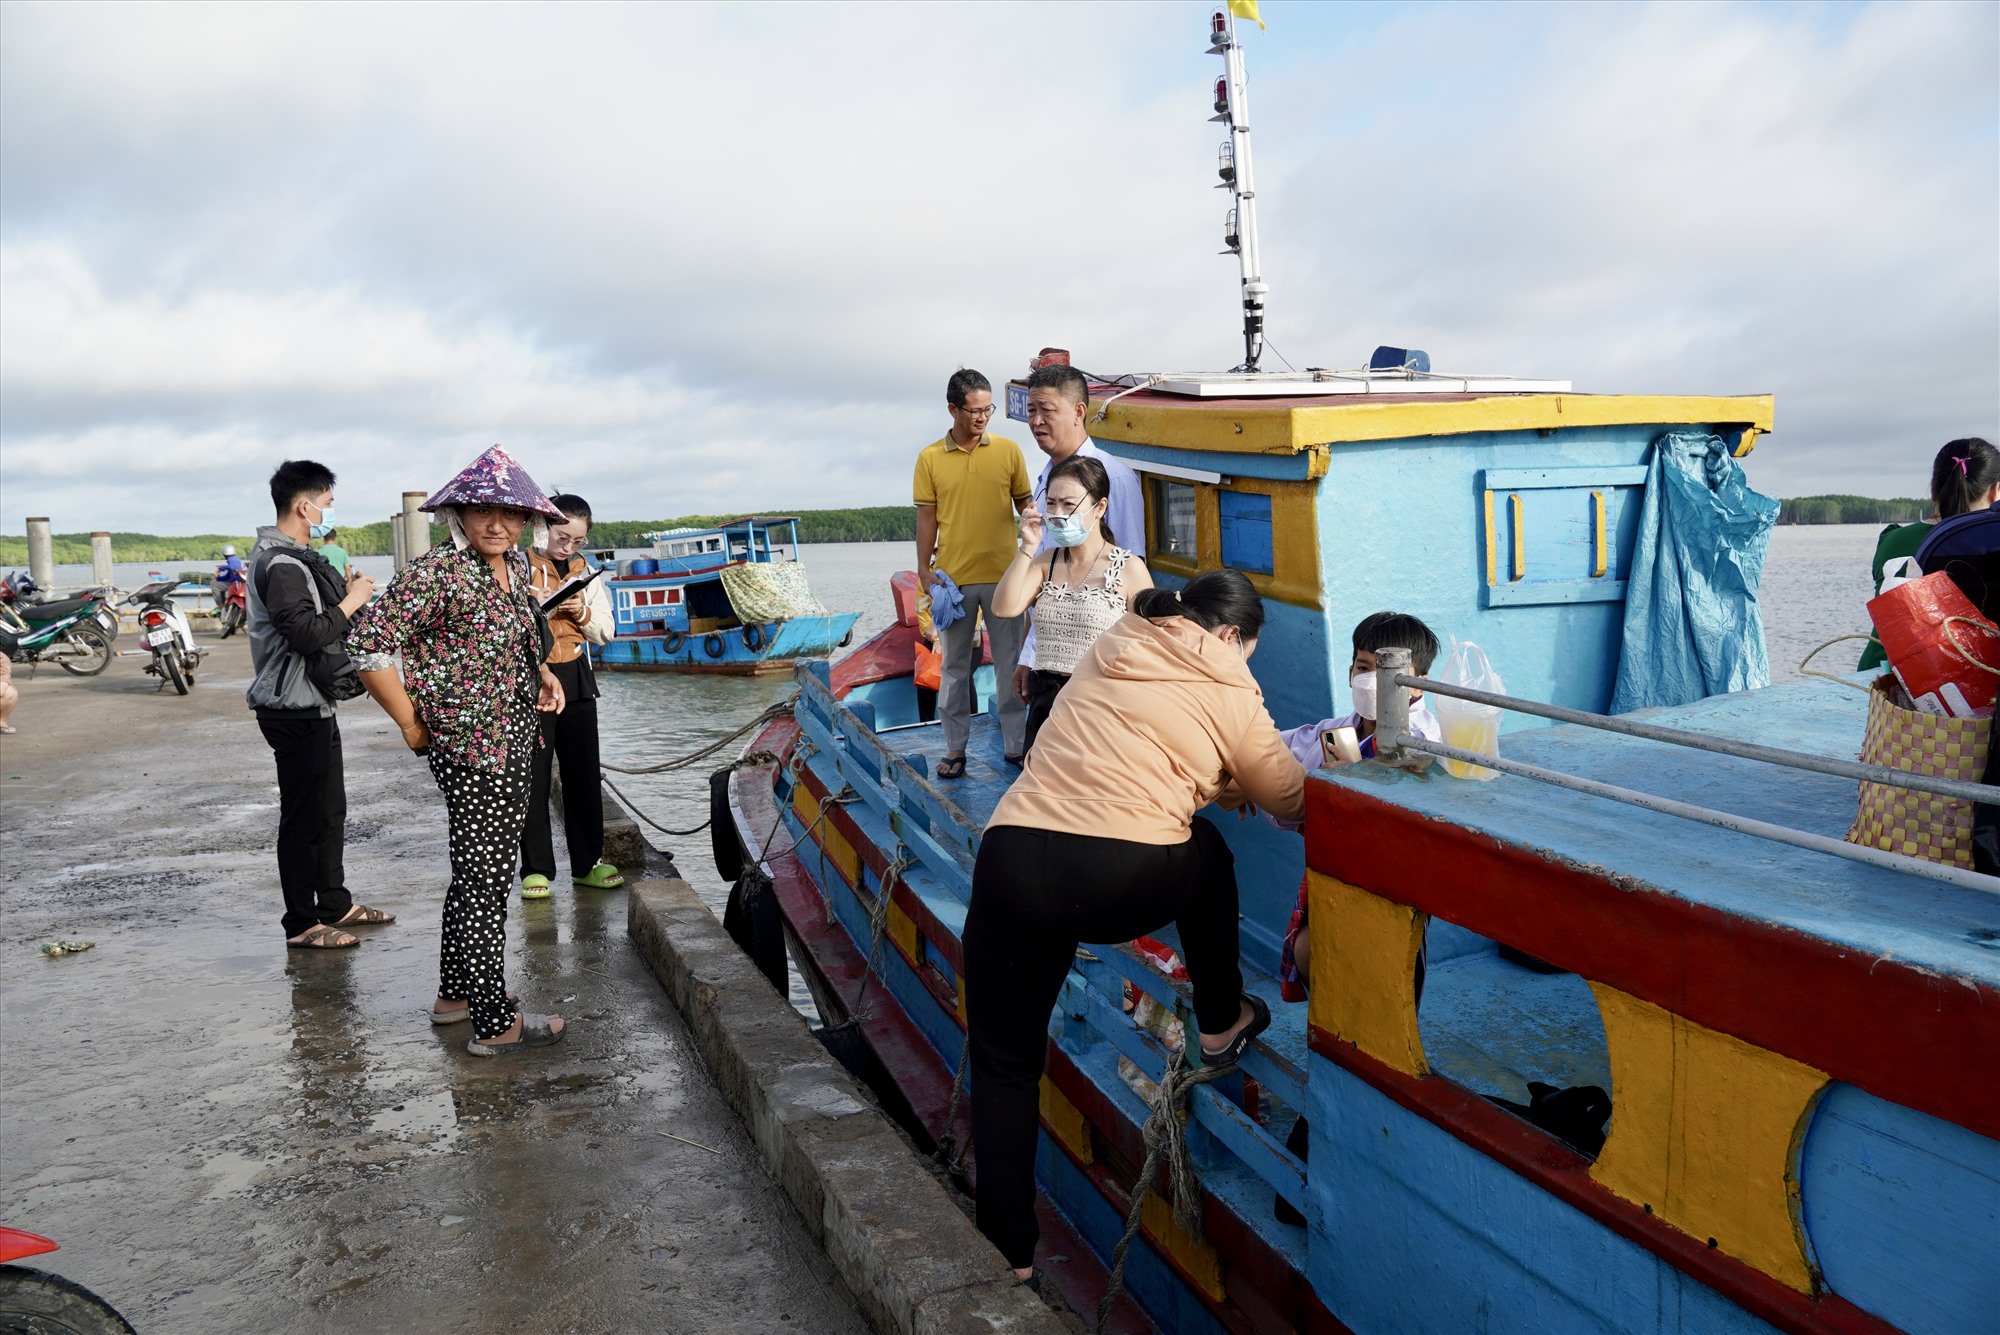 Vào dịp cuối tuần rất nhiều du khách từ trung tâm Sài Gòn và Cần Giờ ra đảo tham quan. Một ngày có 5 - 7 chuyến tàu chở người qua lại giữa thị trấn Cần Thạnh (Cần Giờ) và xã đảo Thạnh An, mỗi chuyến mất khoảng 30 phút, giá vé 15.000 đồng một người. 